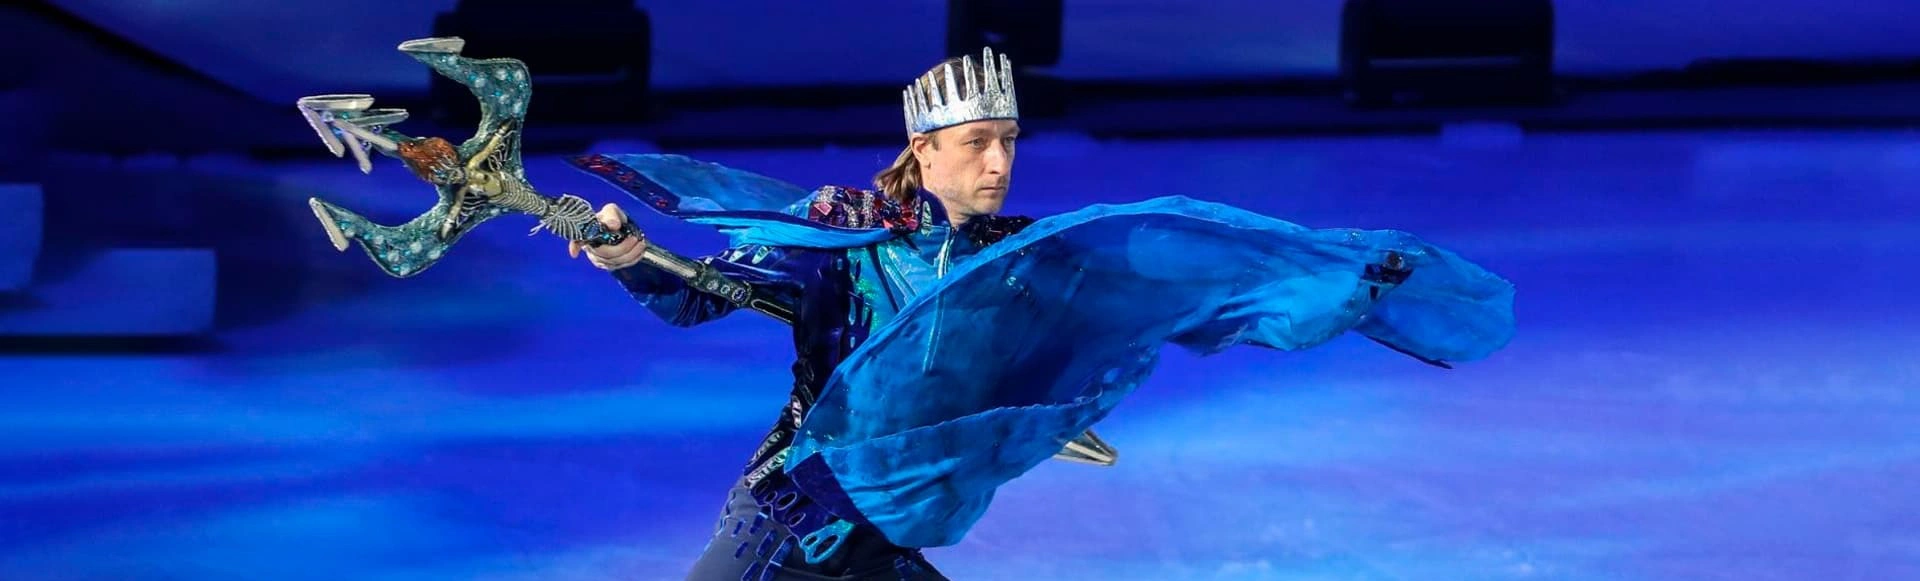 Яна Рудковская и Евгений Плющенко с гордостью представляют вам новое захватывающее шоу на льду — «Русалочка»!